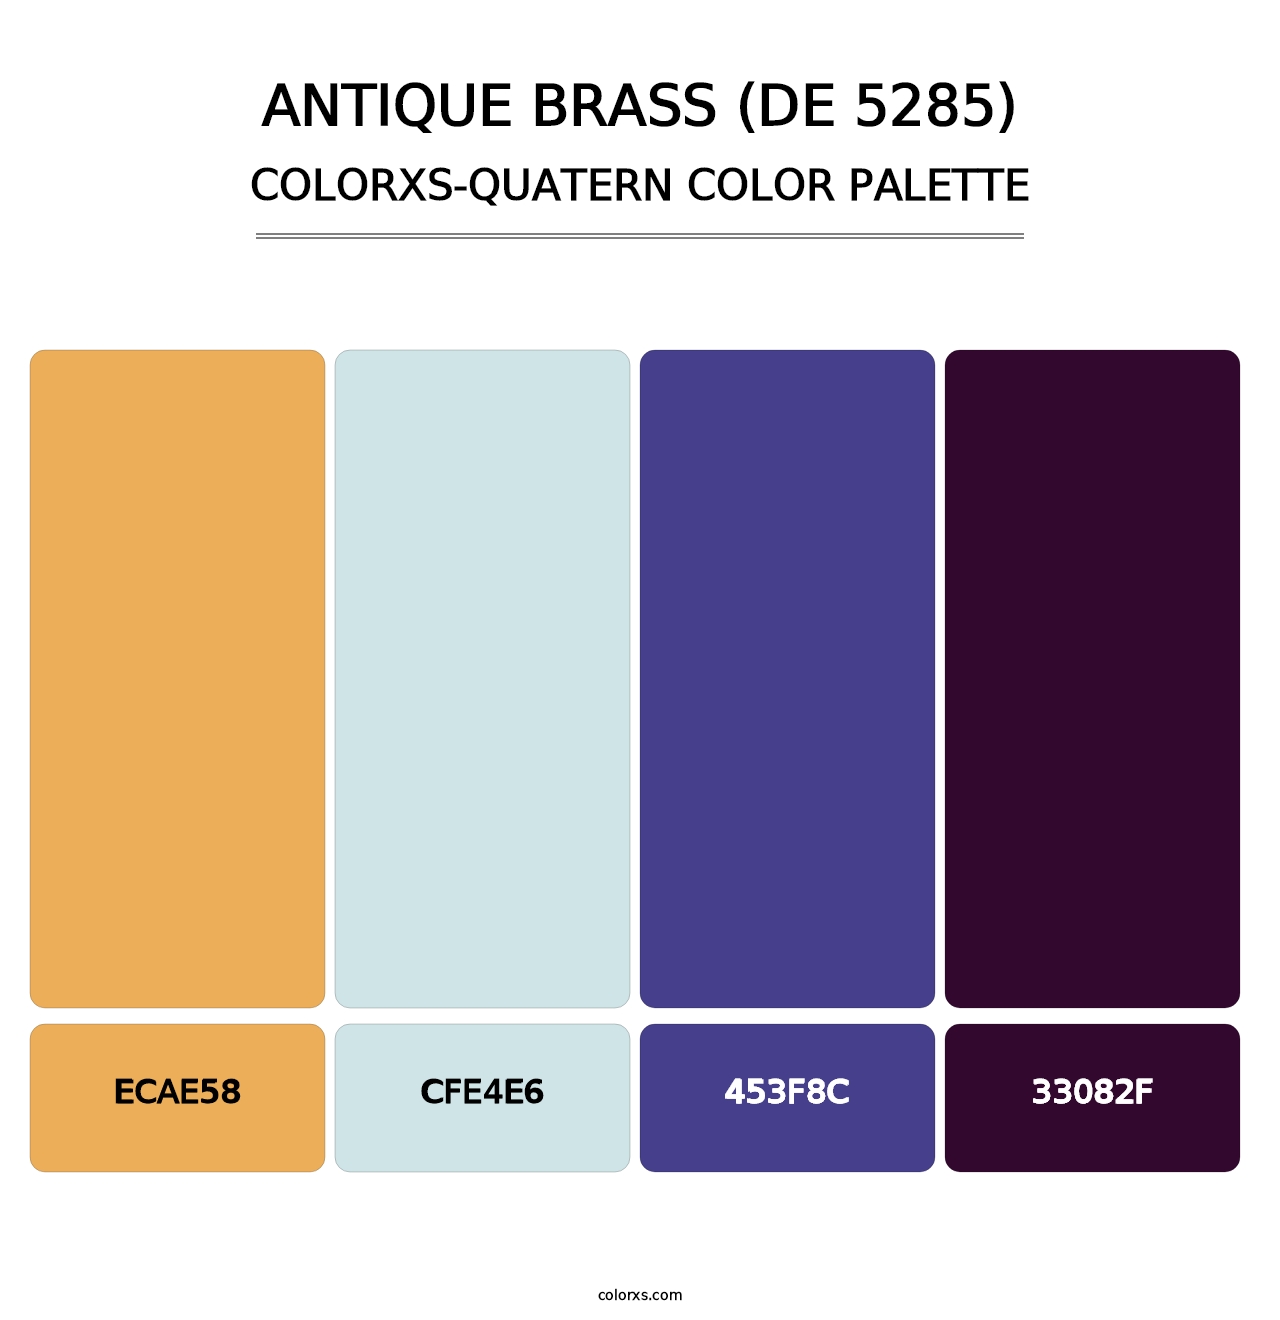 Antique Brass (DE 5285) - Colorxs Quatern Palette